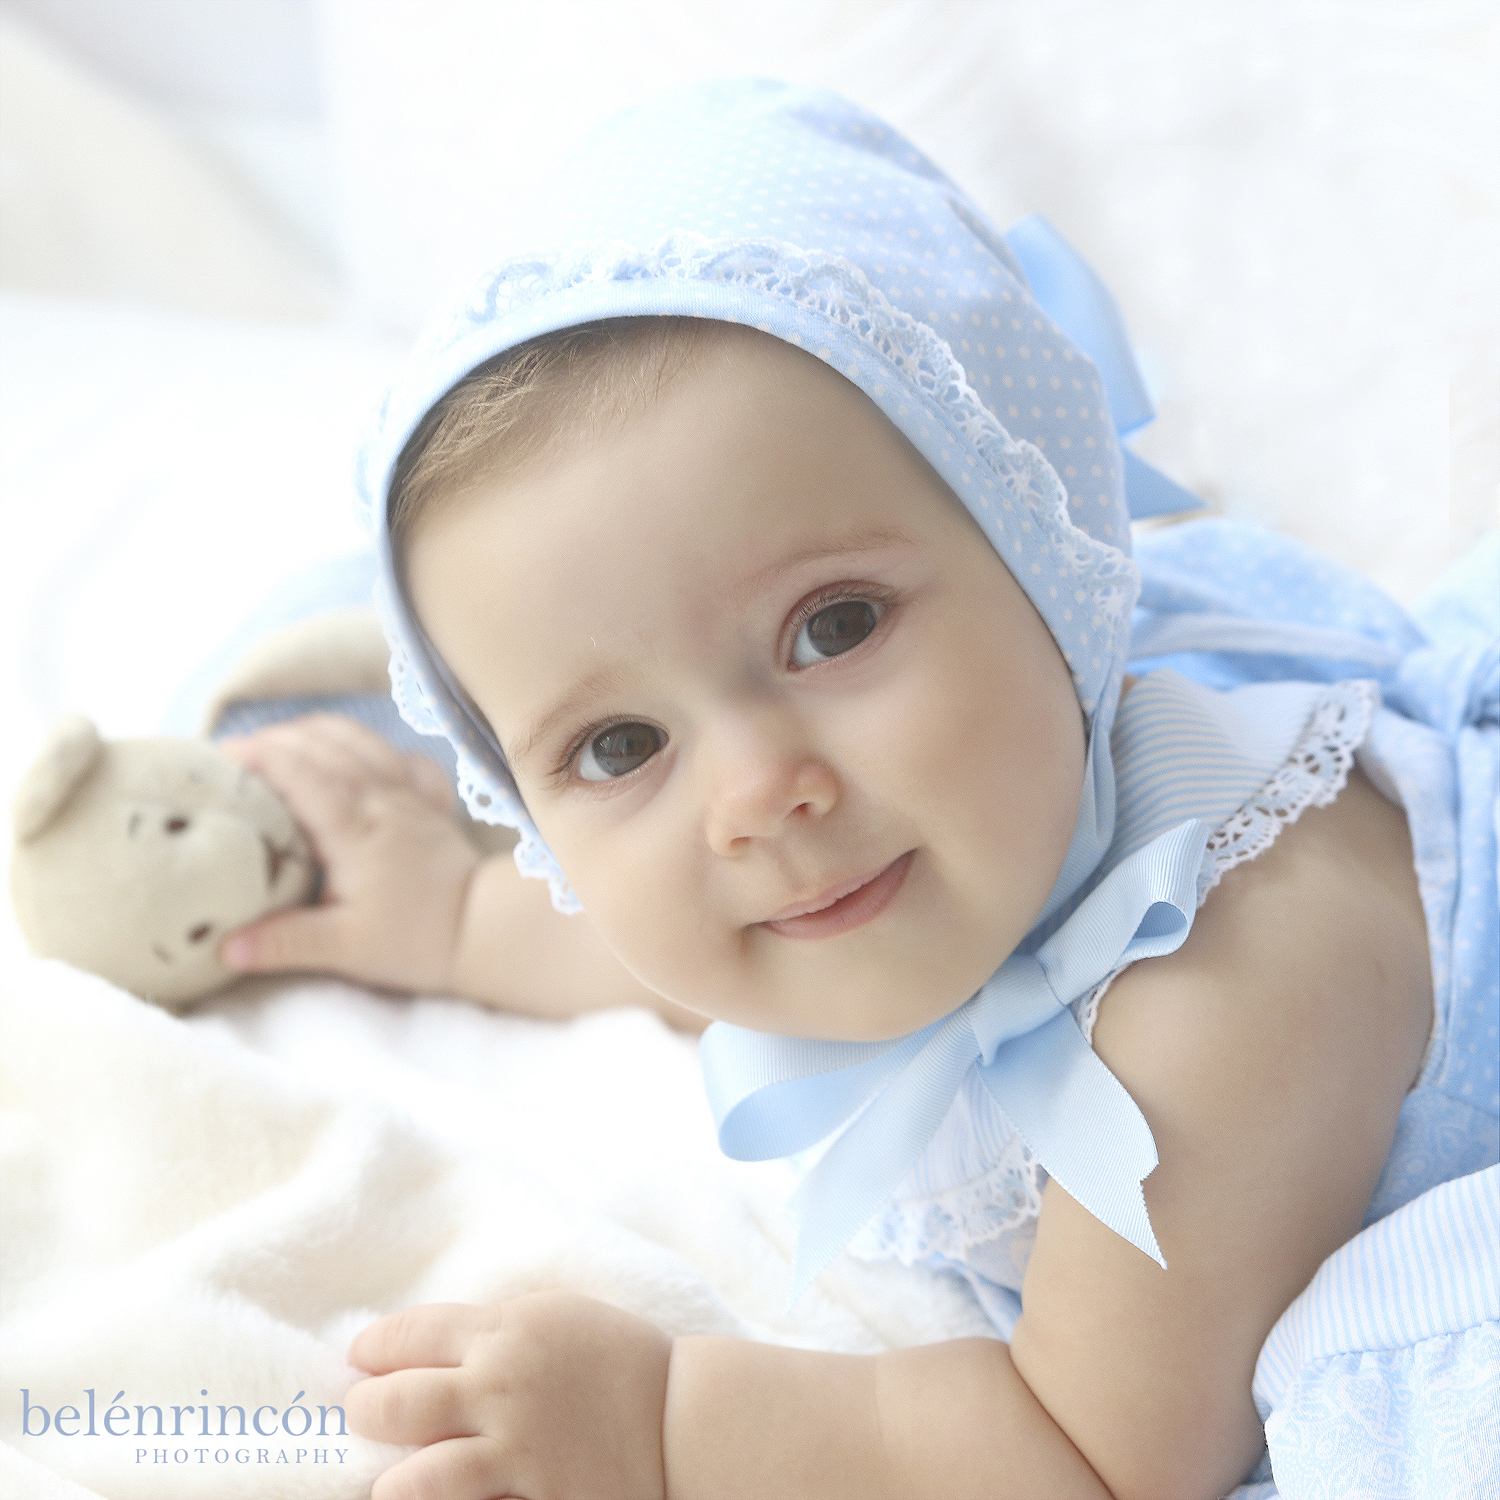 Primer plano de María con su conjunto azul. Uno de los momentos más relajantes de nuestras sesiones de bebés.